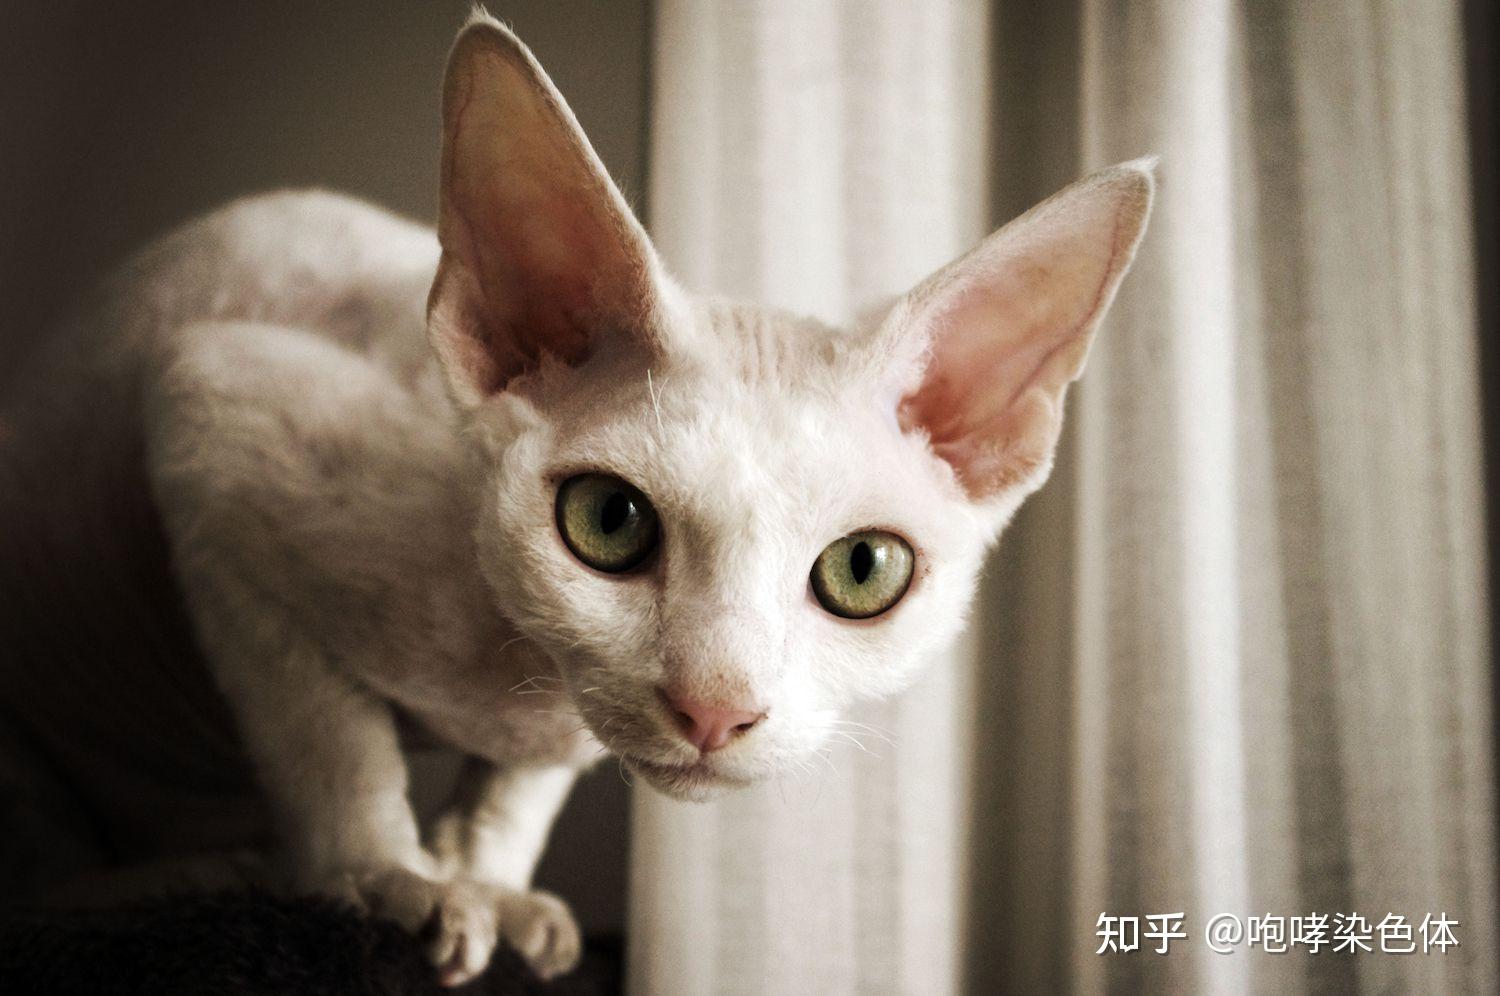 有哪些大耳朵的猫品种?